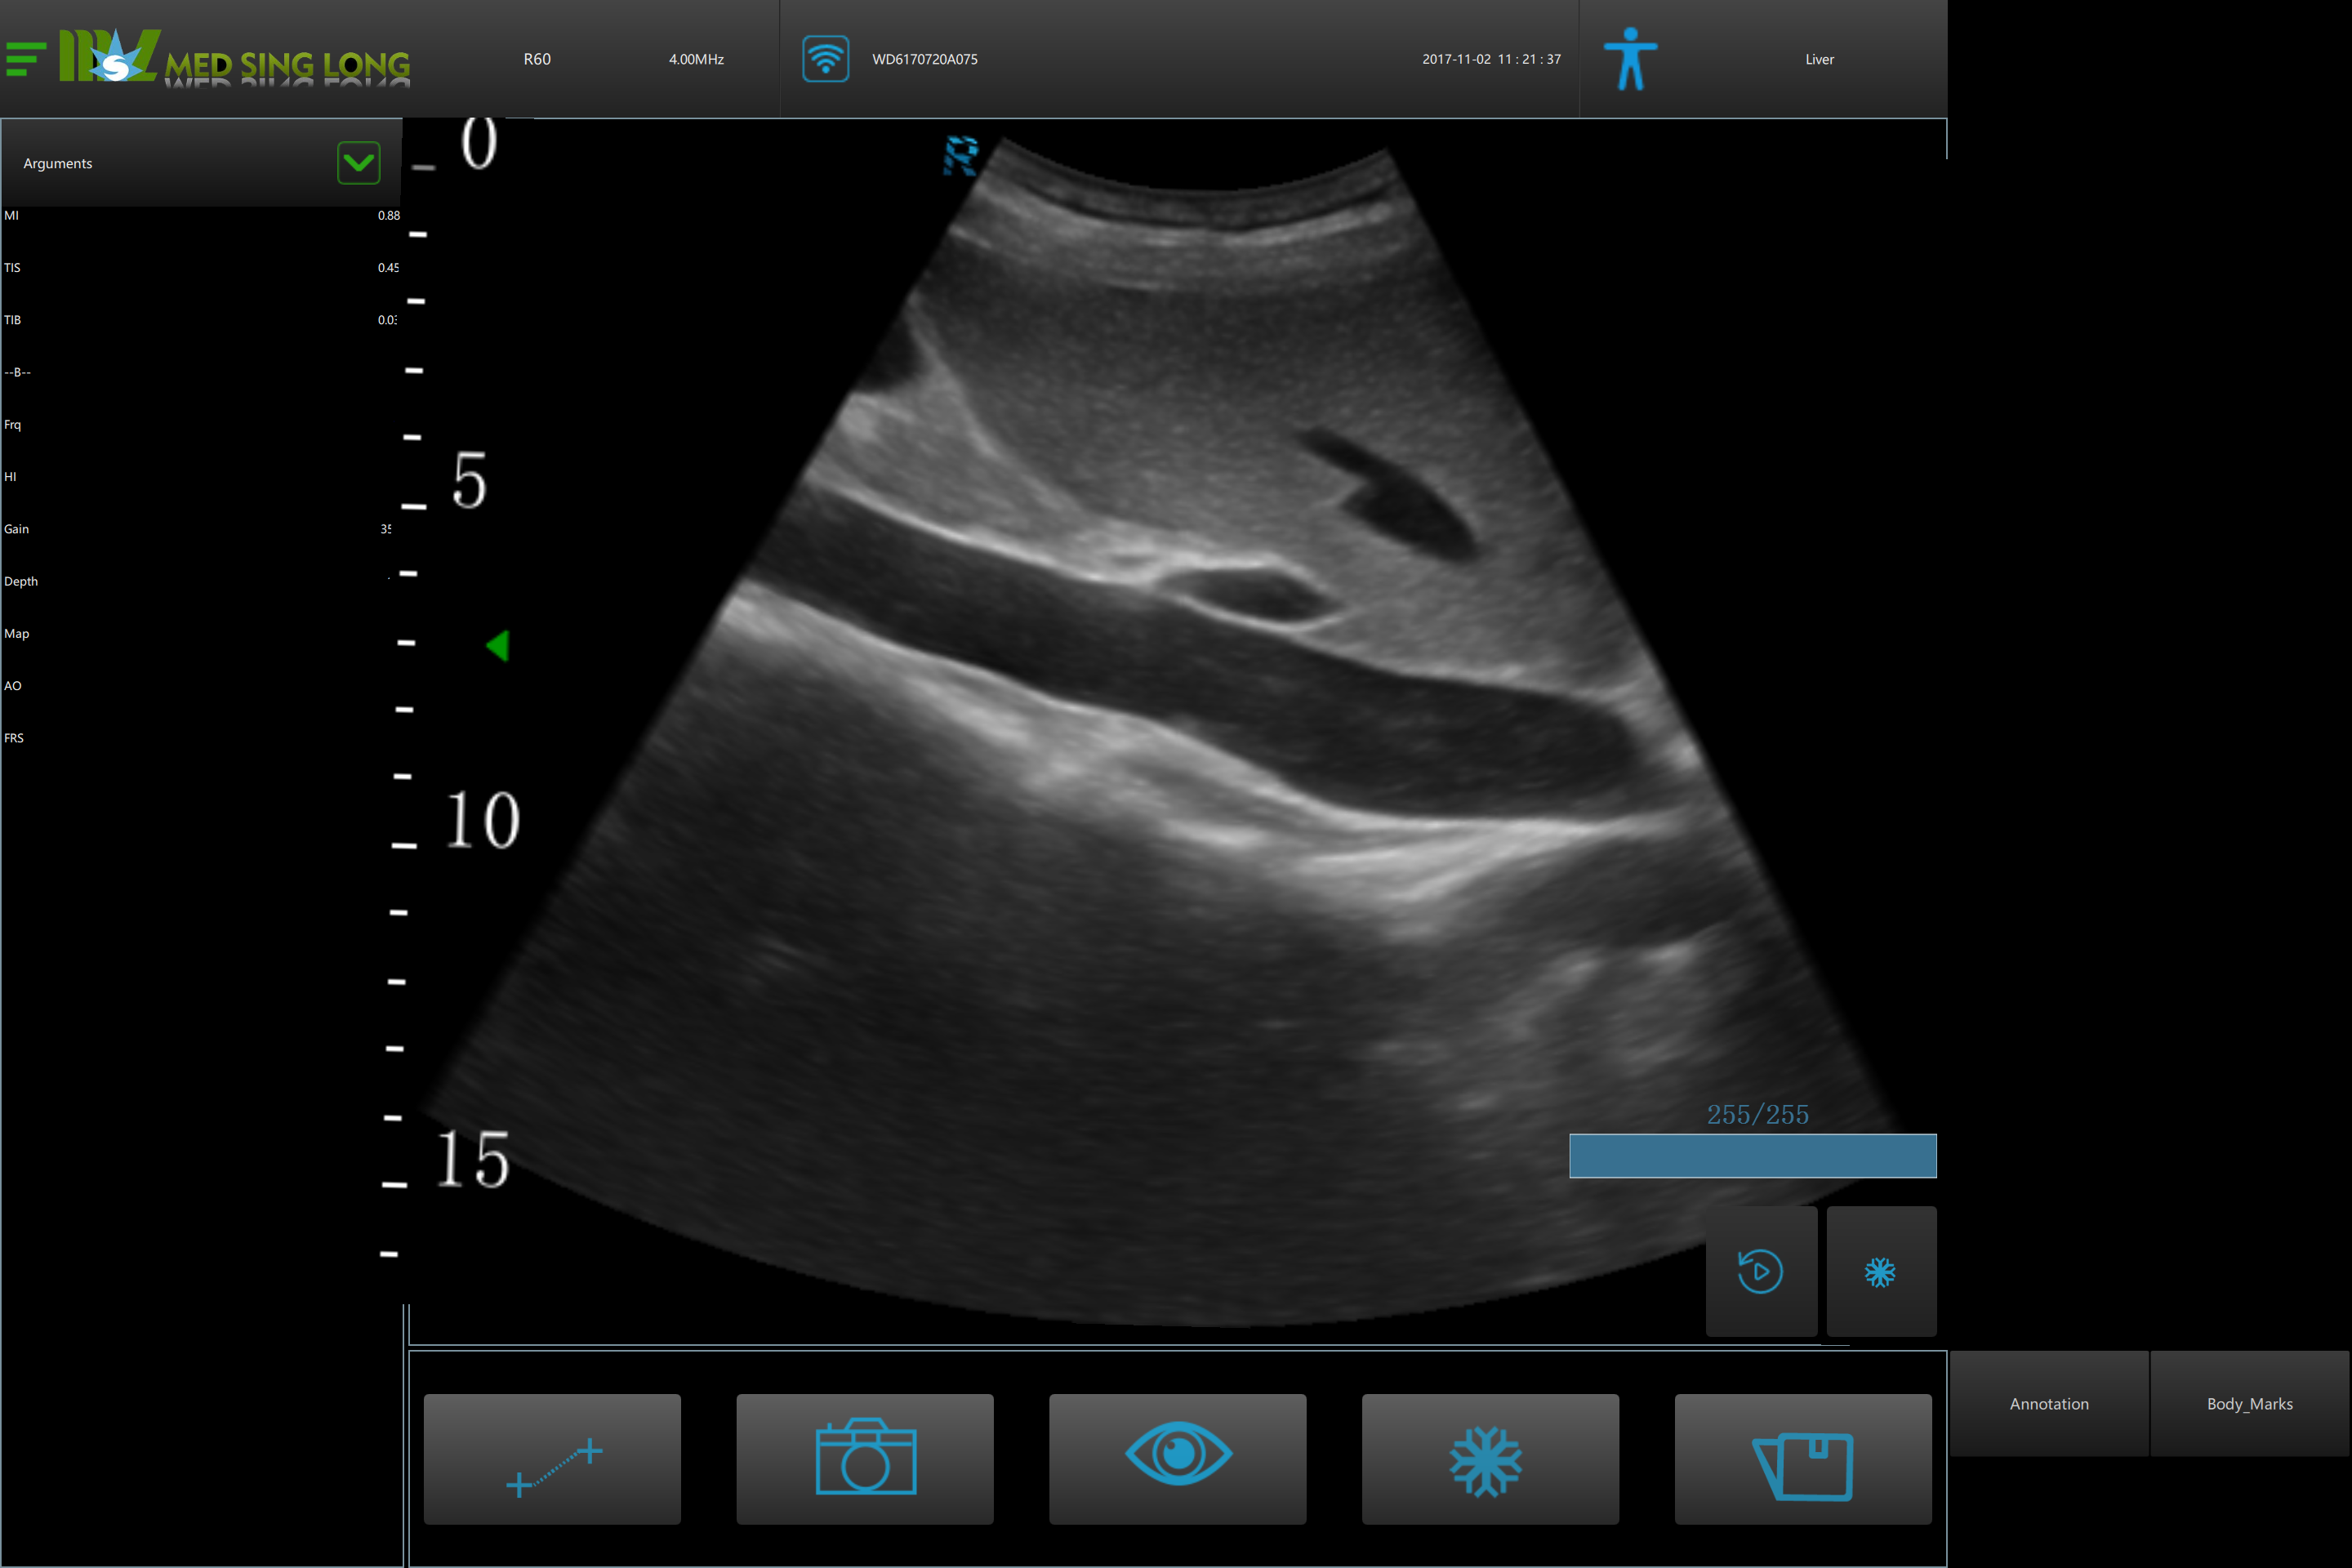 3D ultrasound